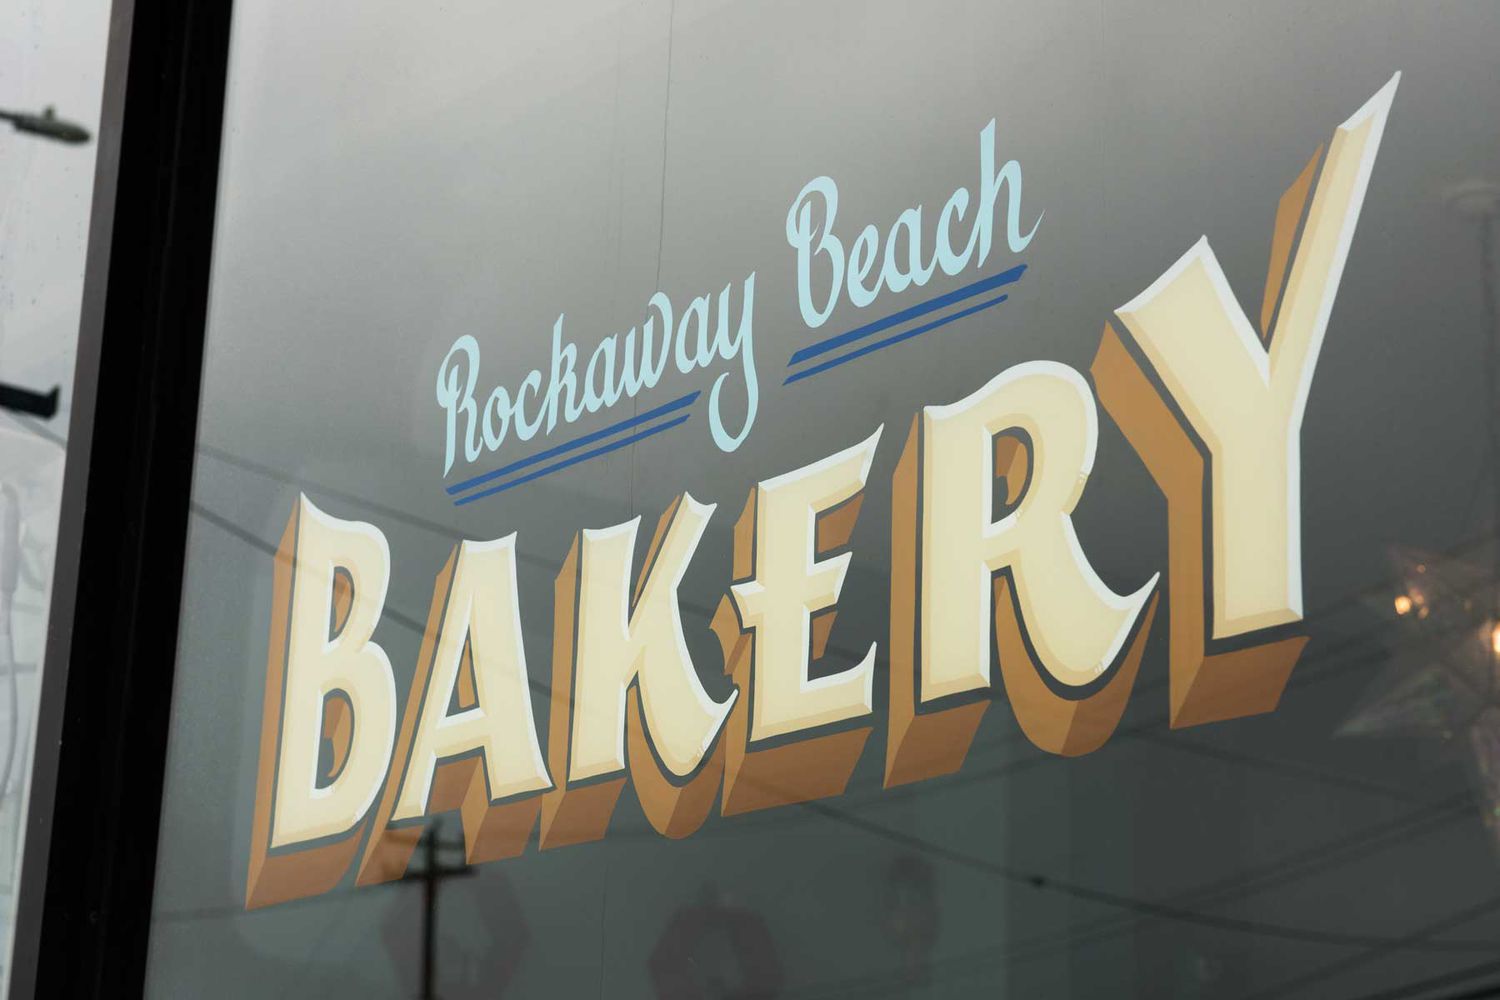 Rockaway Beach Bakery signe peint sur la fenêtre de la boulangerie